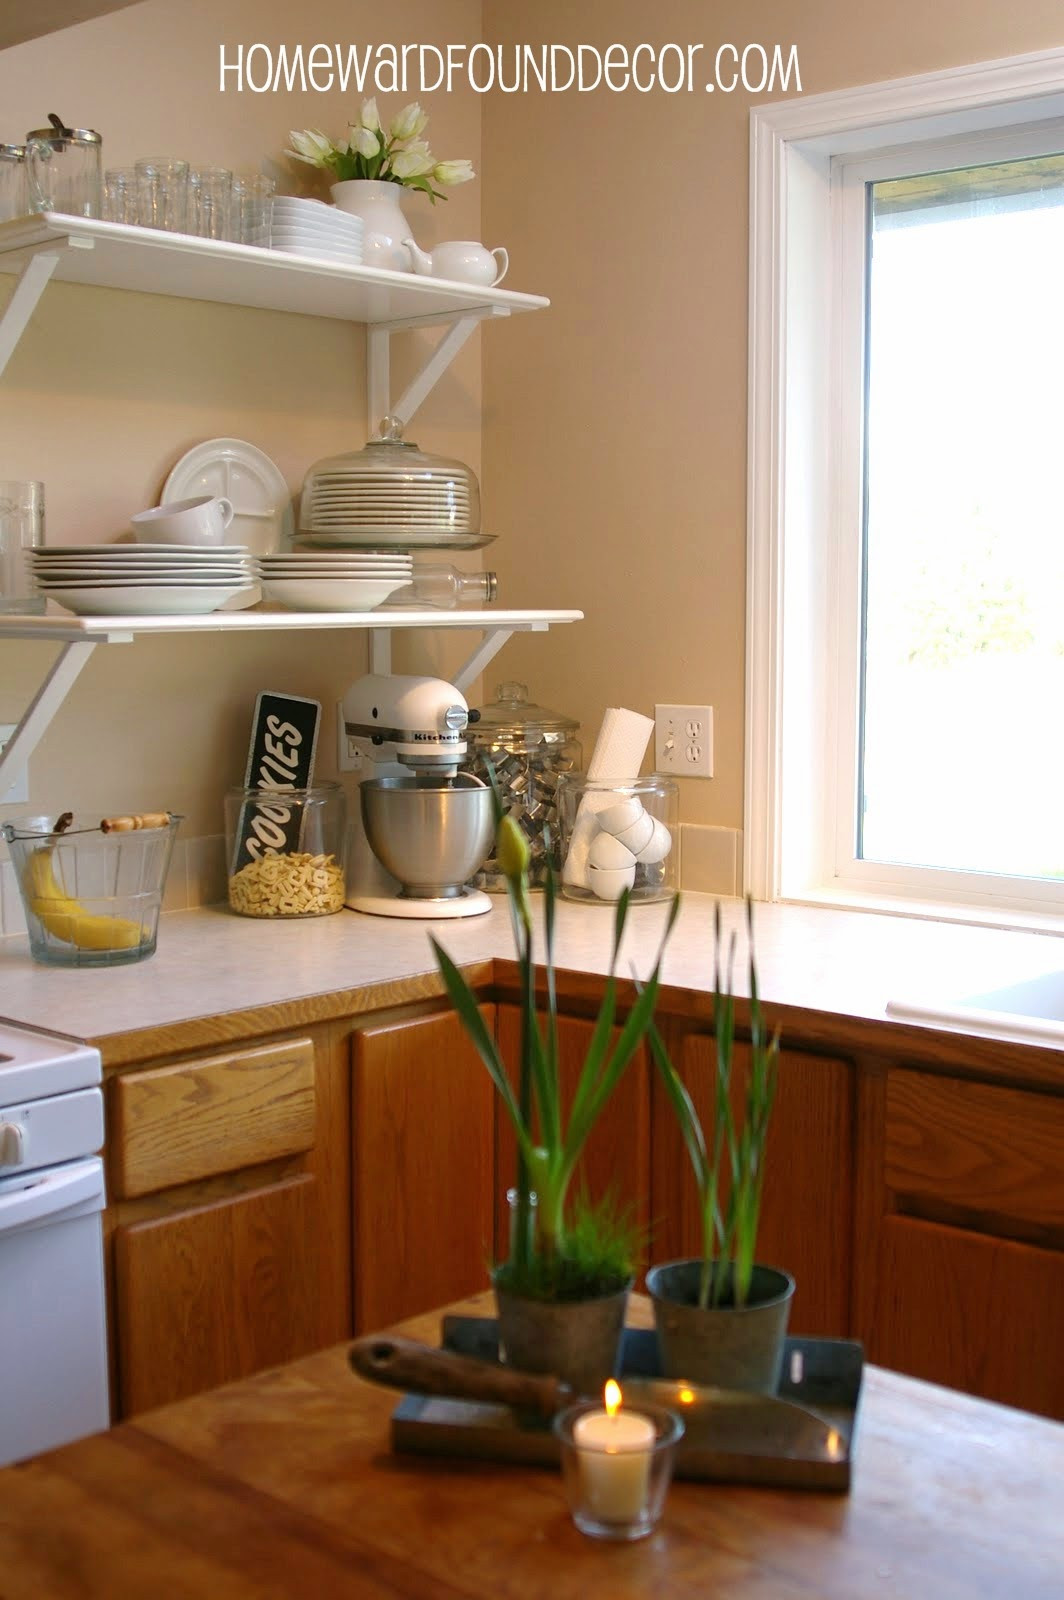 Best ideas about DIY Kitchen Shelf
. Save or Pin DIY Kitchen Cabinet to Shelf Makeover homewardFOUND decor Now.